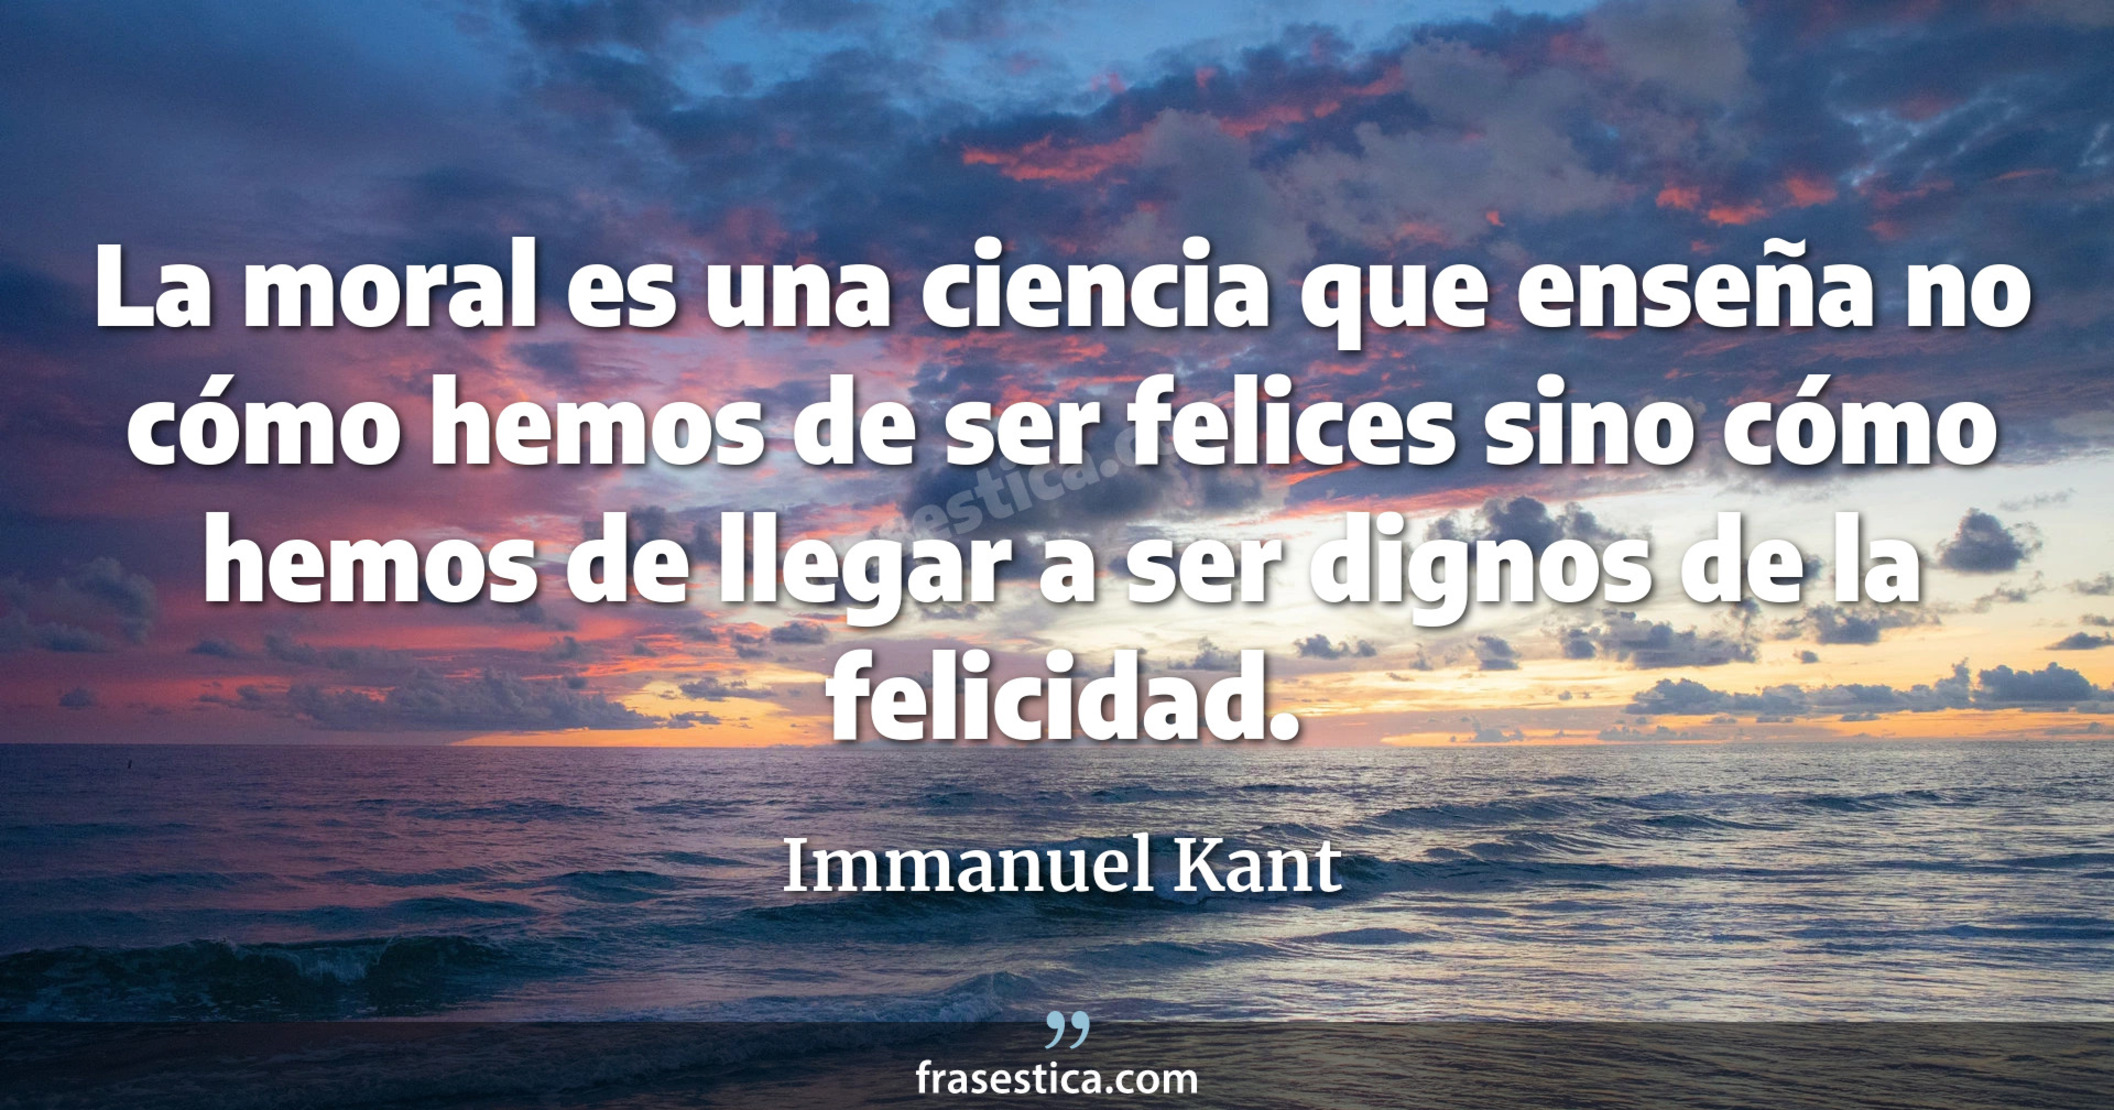 La moral es una ciencia que enseña no cómo hemos de ser felices sino cómo hemos de llegar a ser dignos de la felicidad. - Immanuel Kant